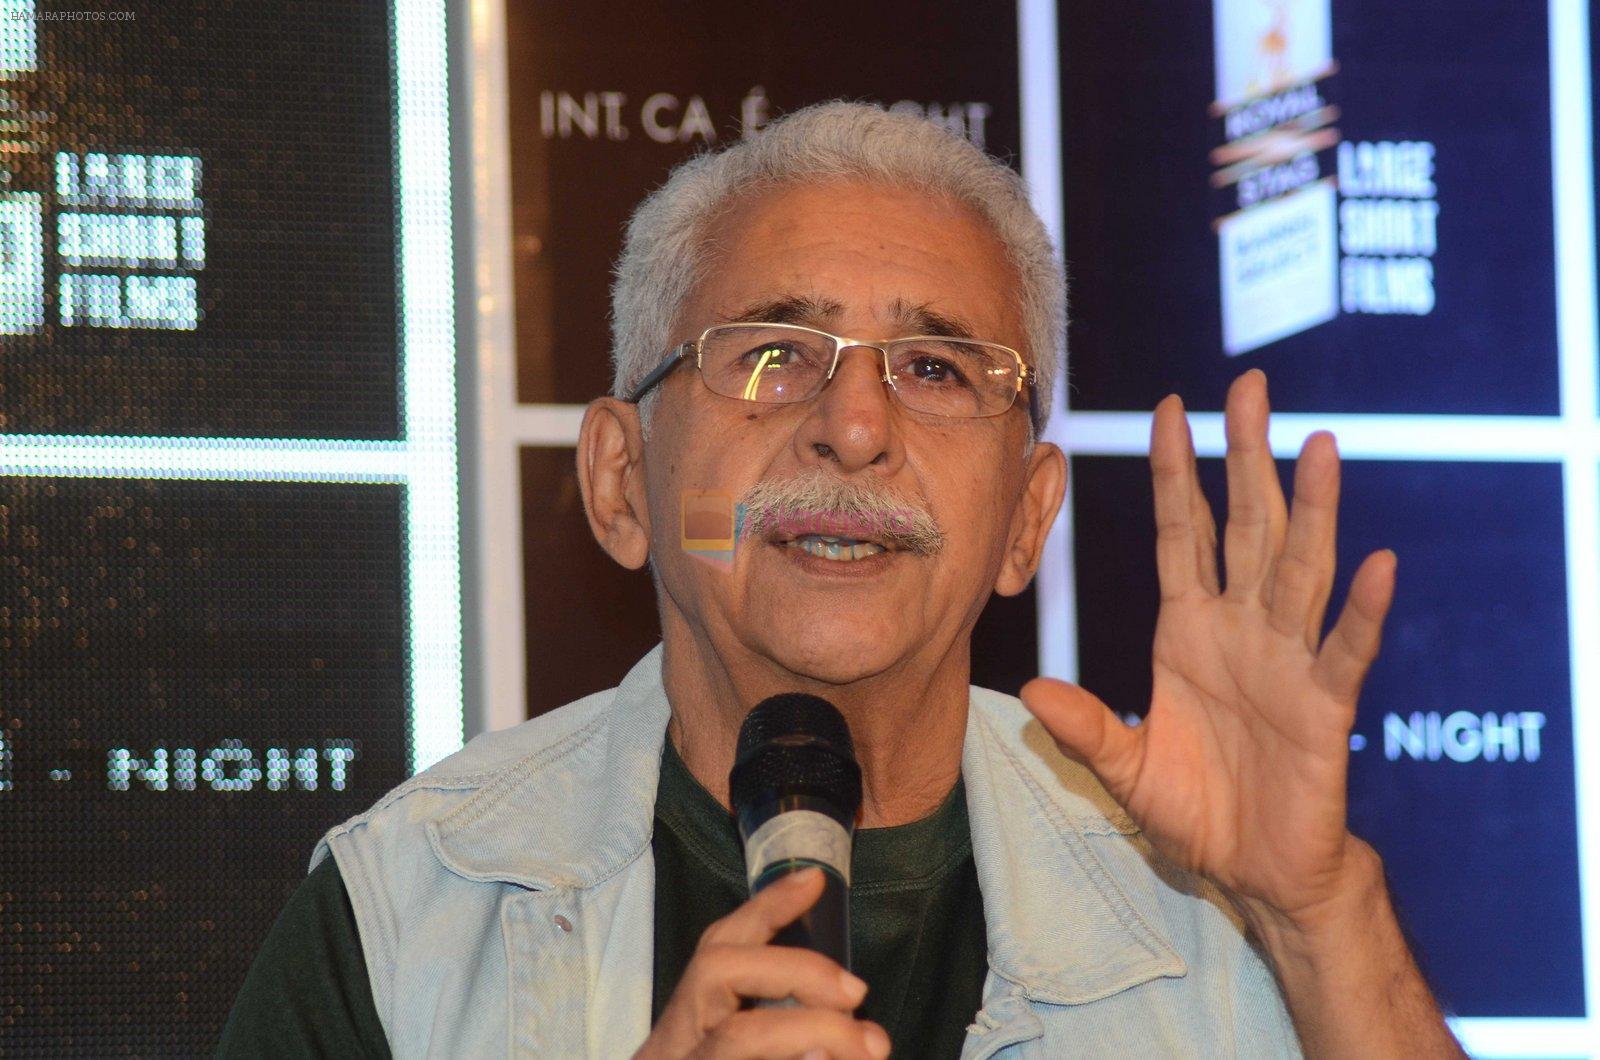 Naseeruddin Shah at Media interaction & screening of short film Interior Cafe - Night in Mumbai on 18th July 2016